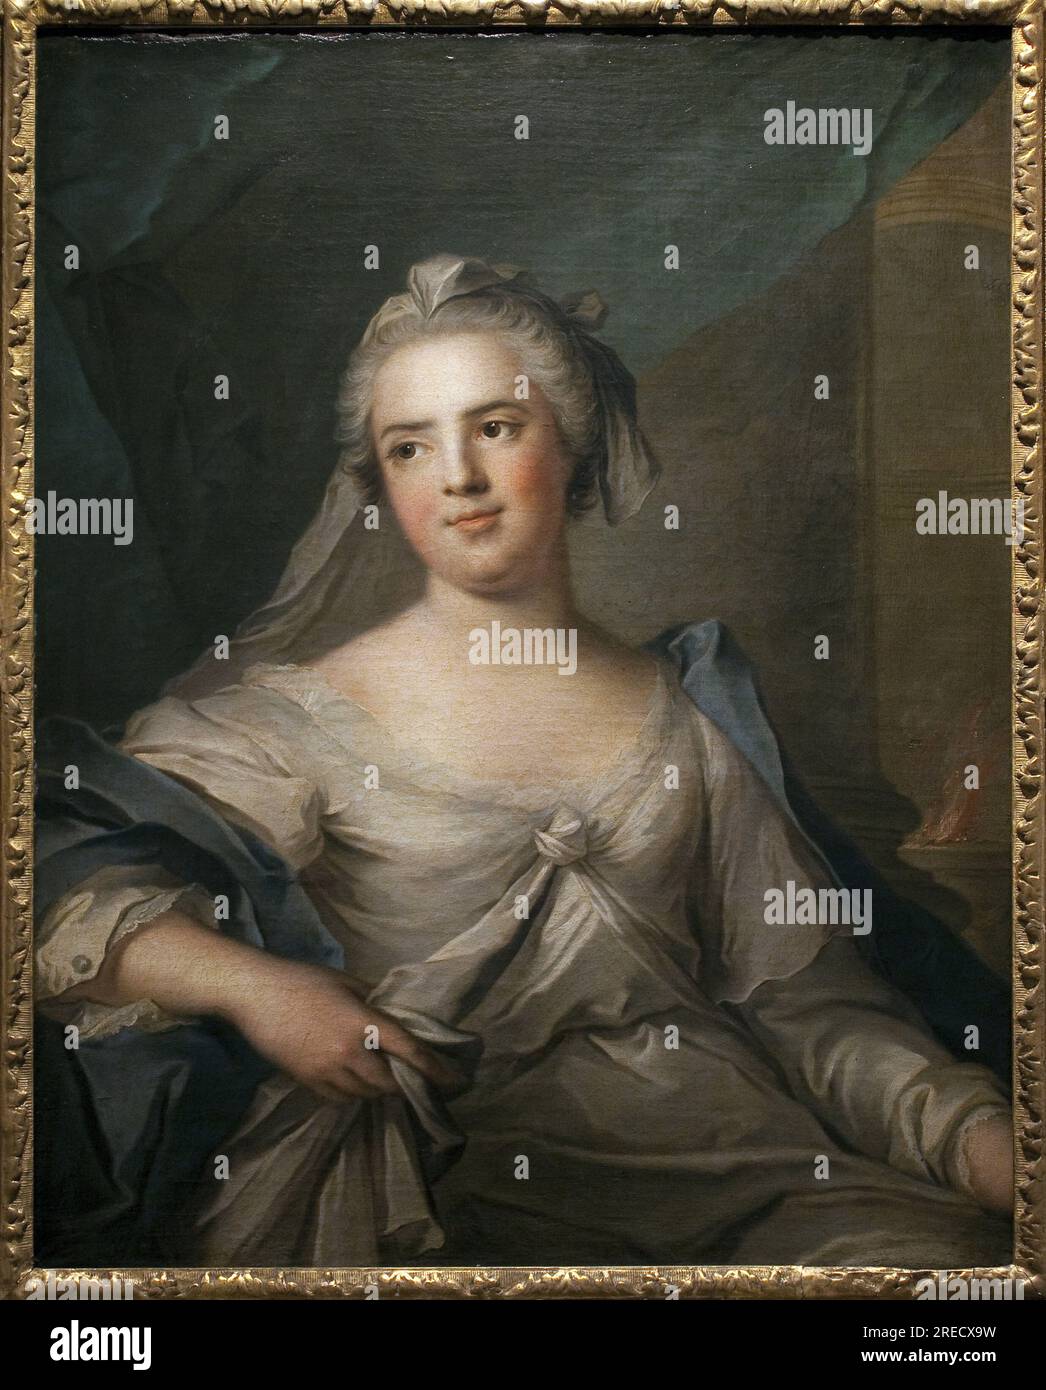 Madame Infante en vestale - Peinture de Jean Marc (Jean-Marc) Nattier (1685-1766), Huile sur toile, Art francais 18e Siecle - Musee des Beaux Arts de Pau Stockfoto